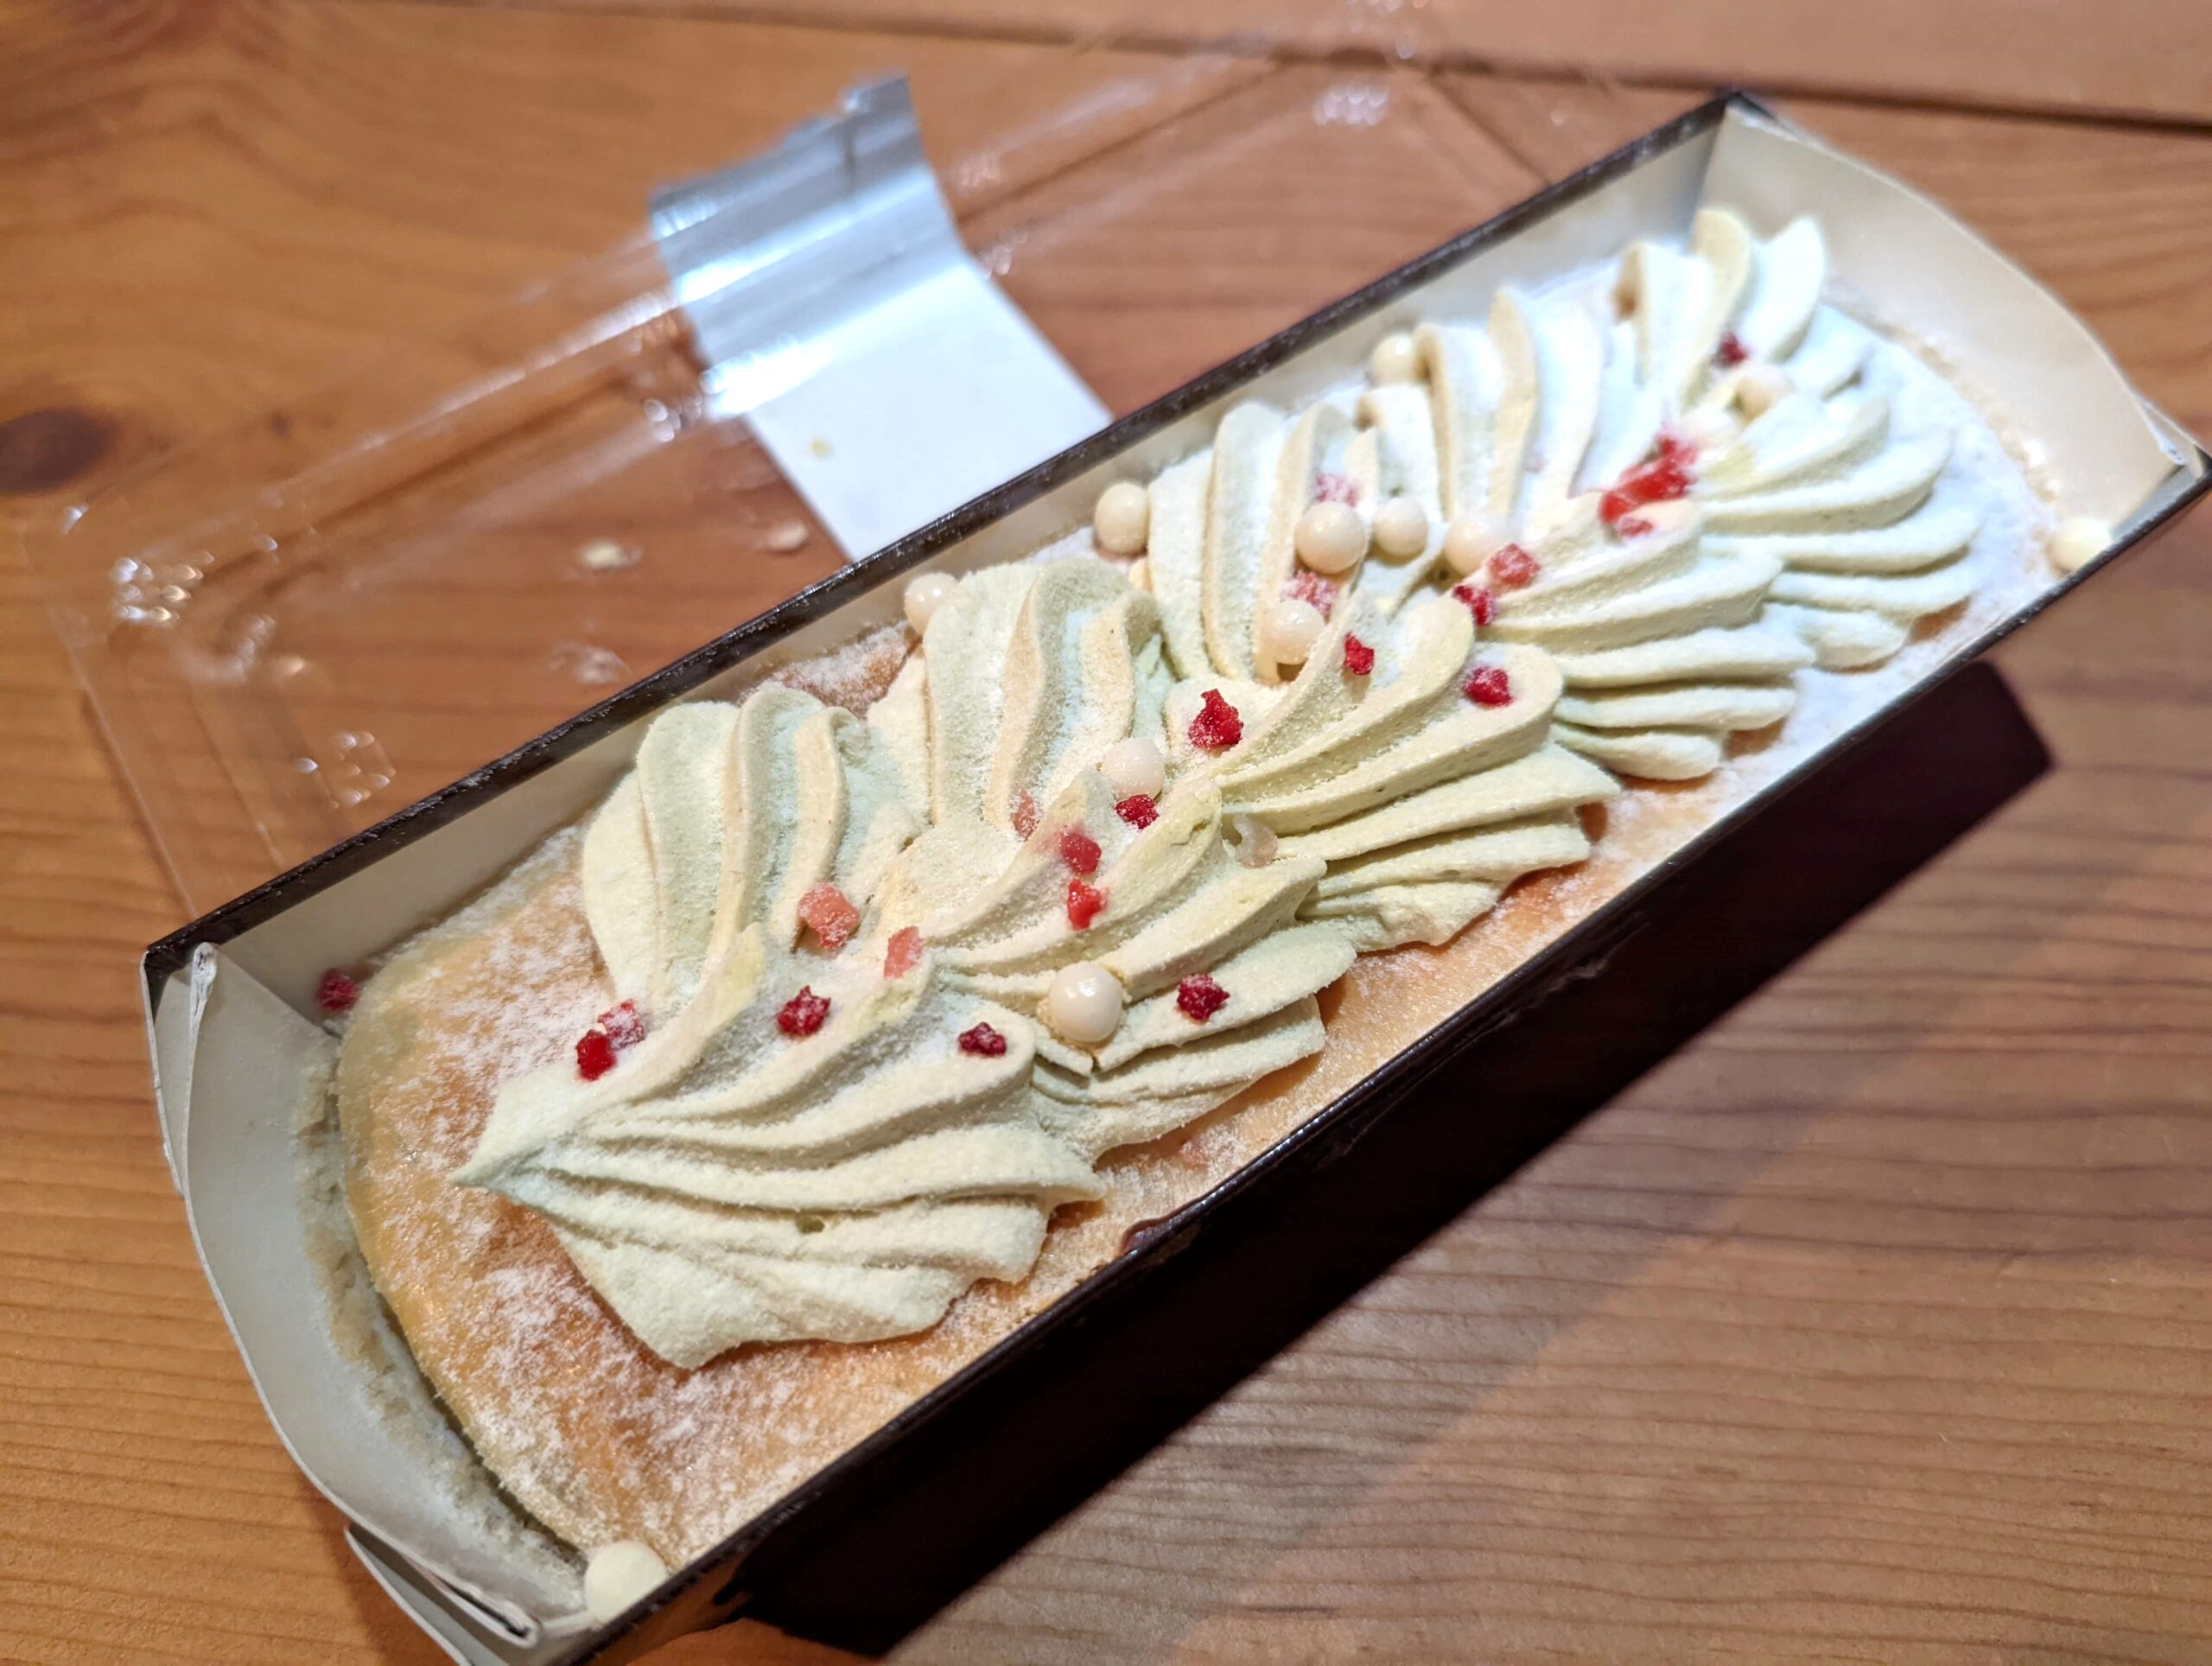 成城石井「3種ベリーとピスタチオのプレミアムチーズケーキ」 (11)